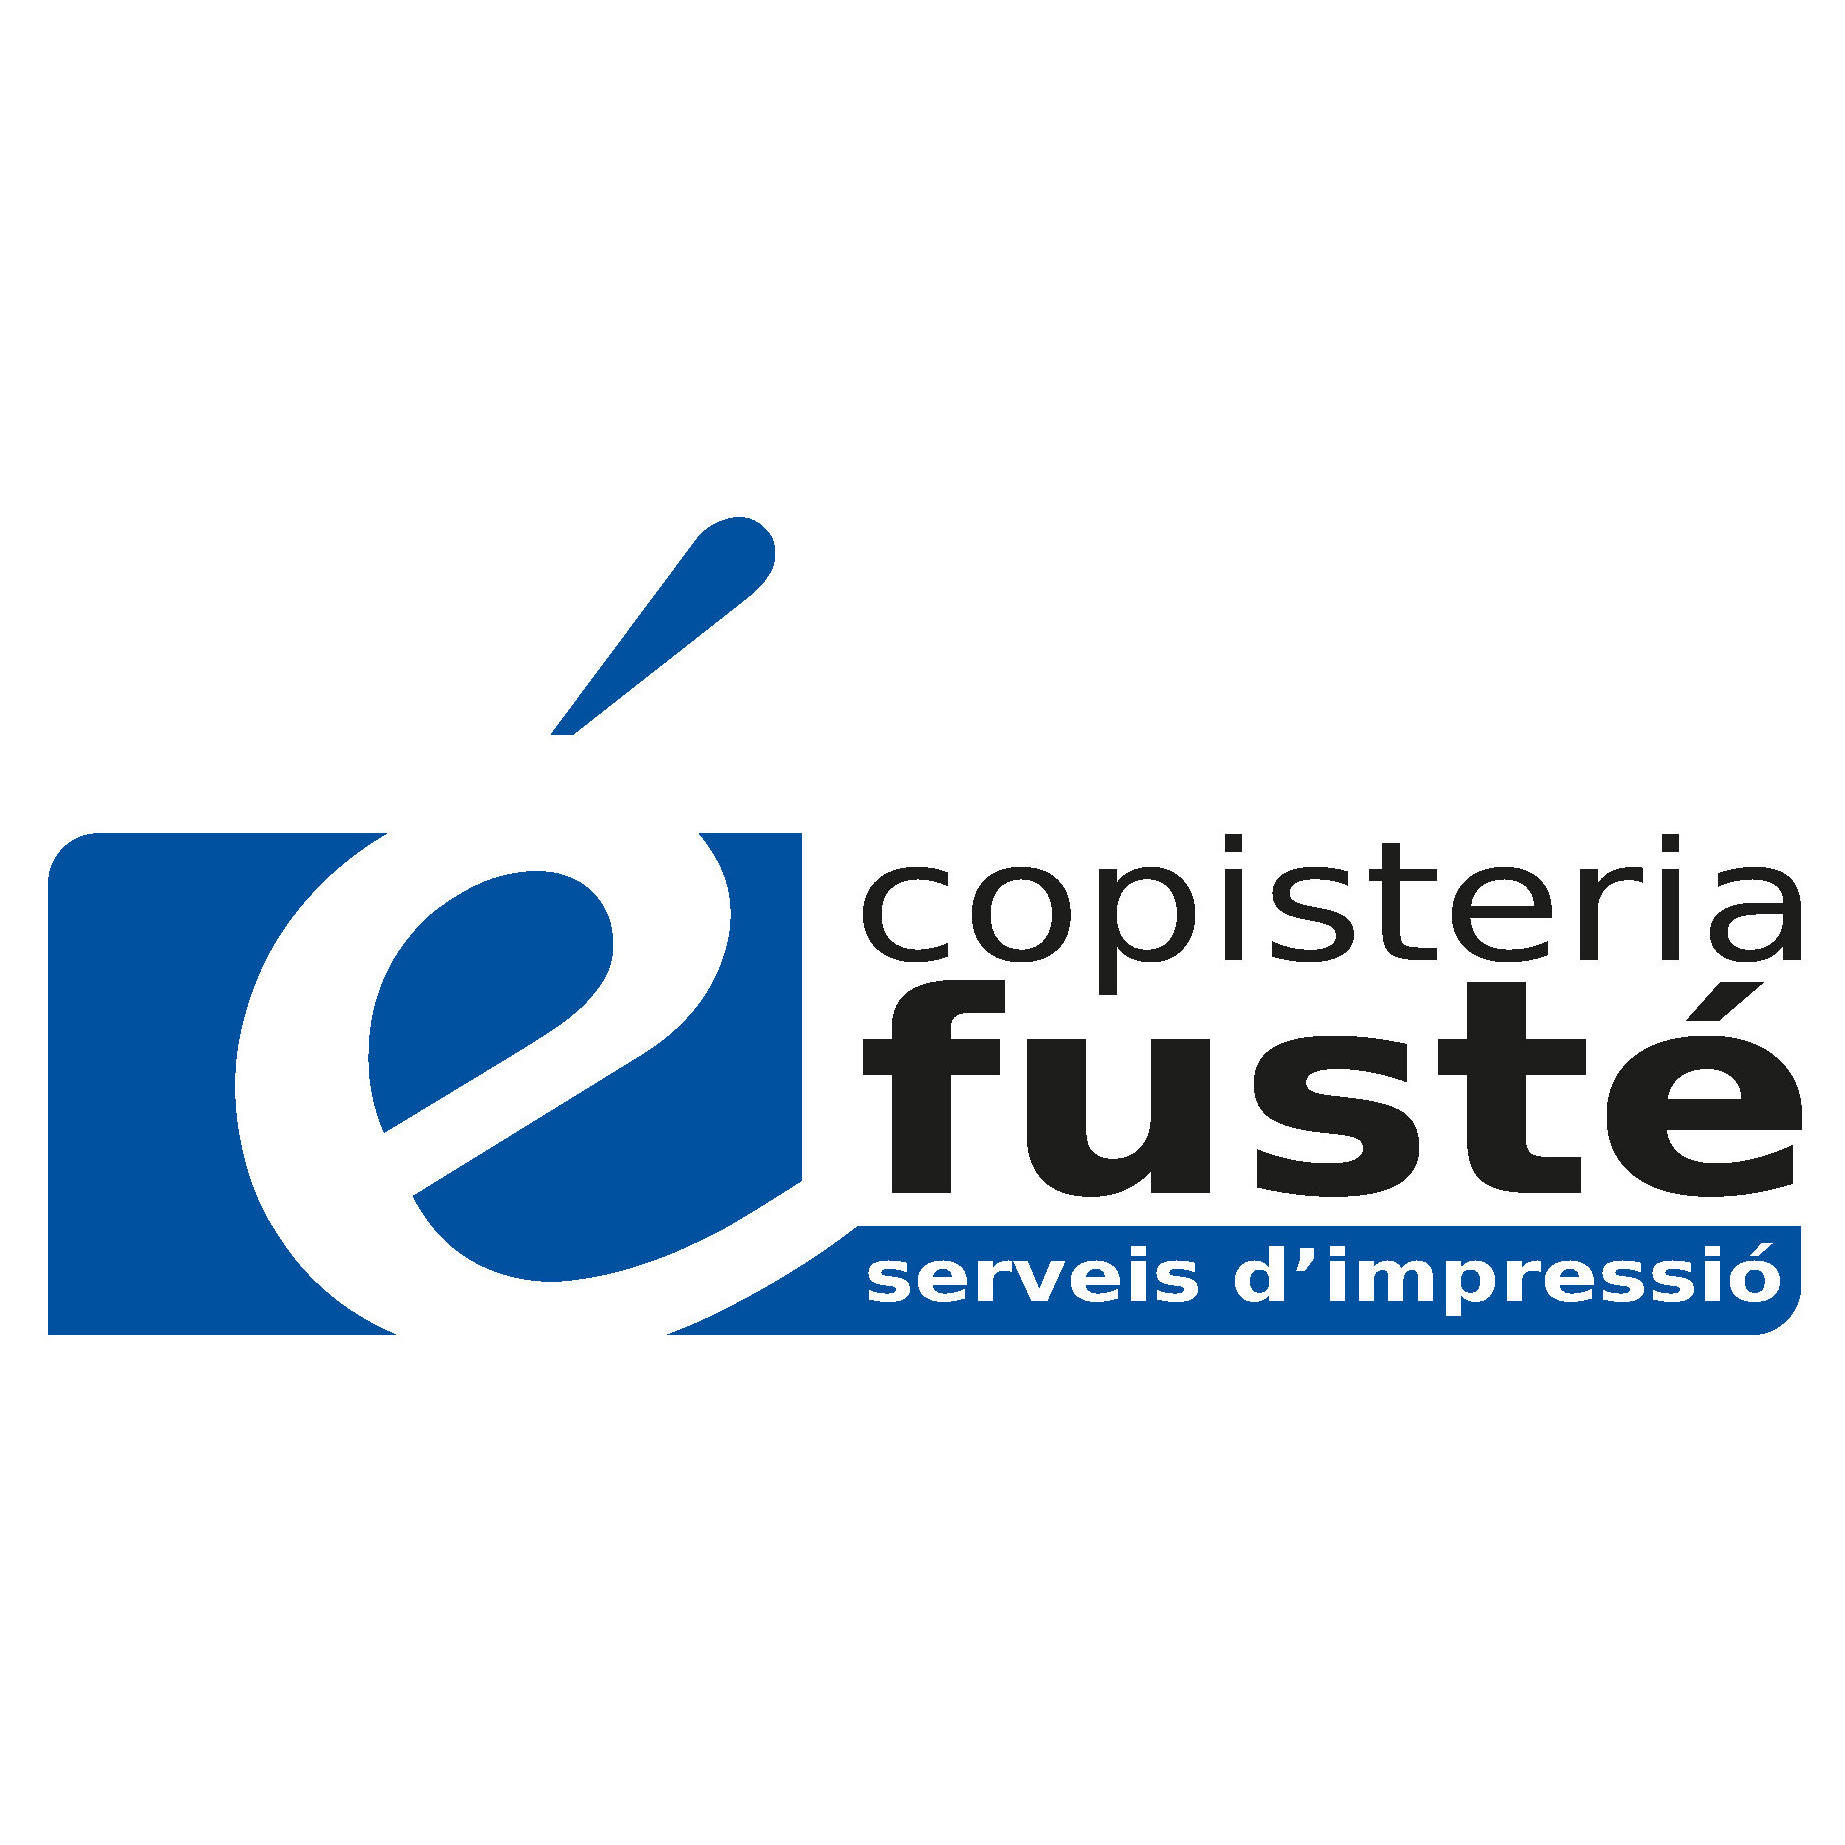 Copistería Fusté Logo